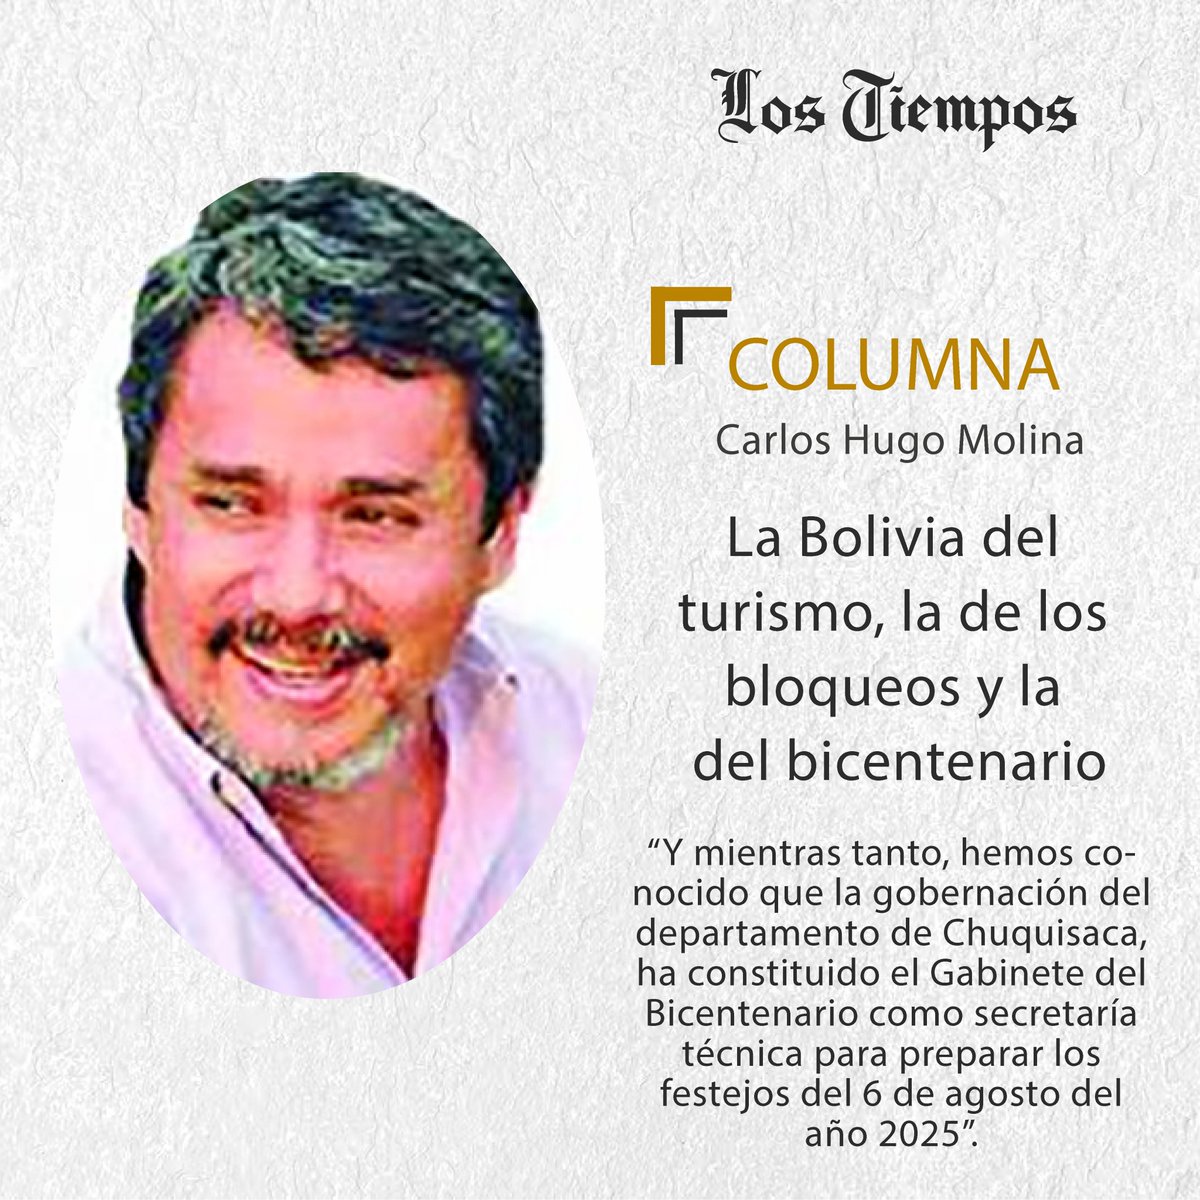 #LTColumna #Puntos de Vista
Lea la columna de Carlos Hugo Molina.
👉 tinyurl.com/yf8mwebt